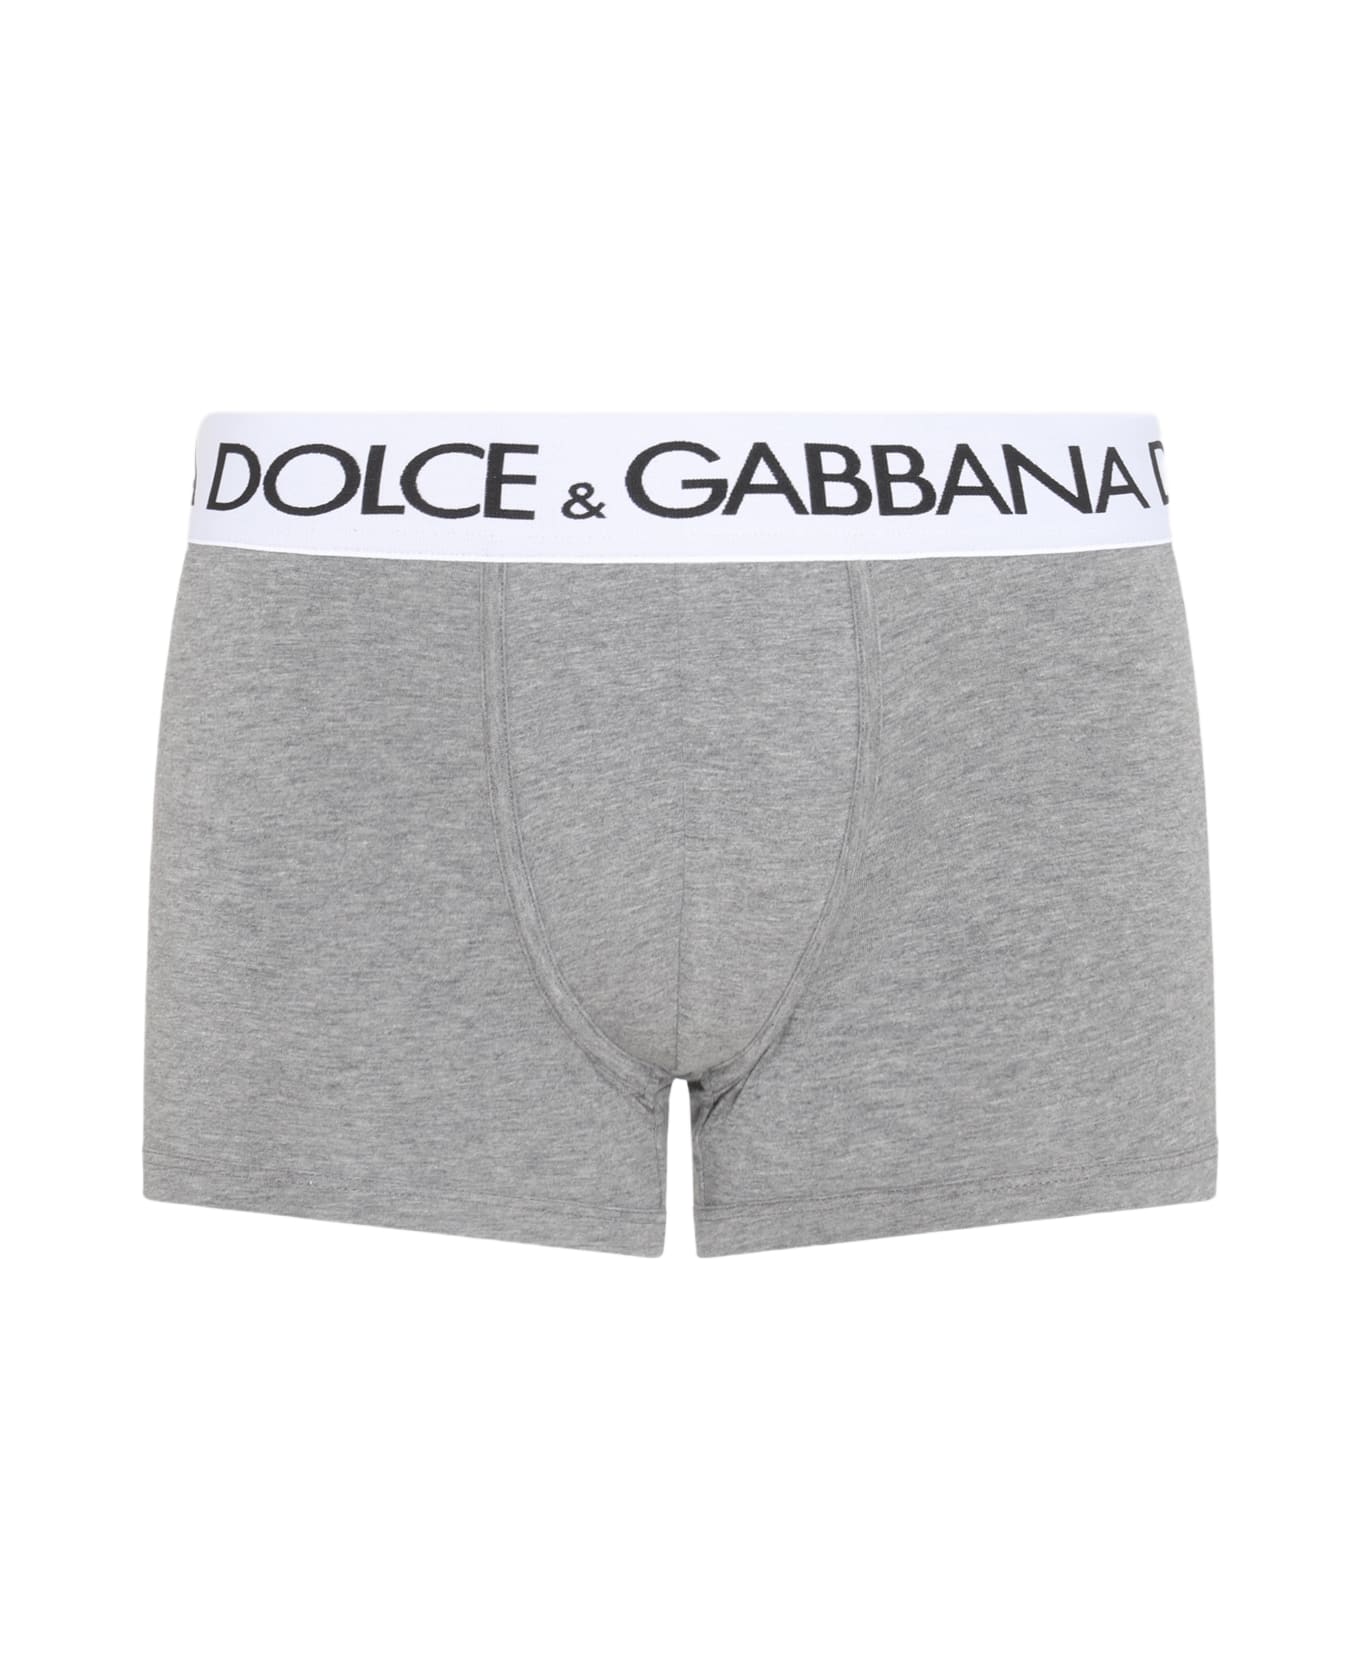 Dolce & Gabbana Grey Cotton Blend Boxers - MELANGE GRIGIO